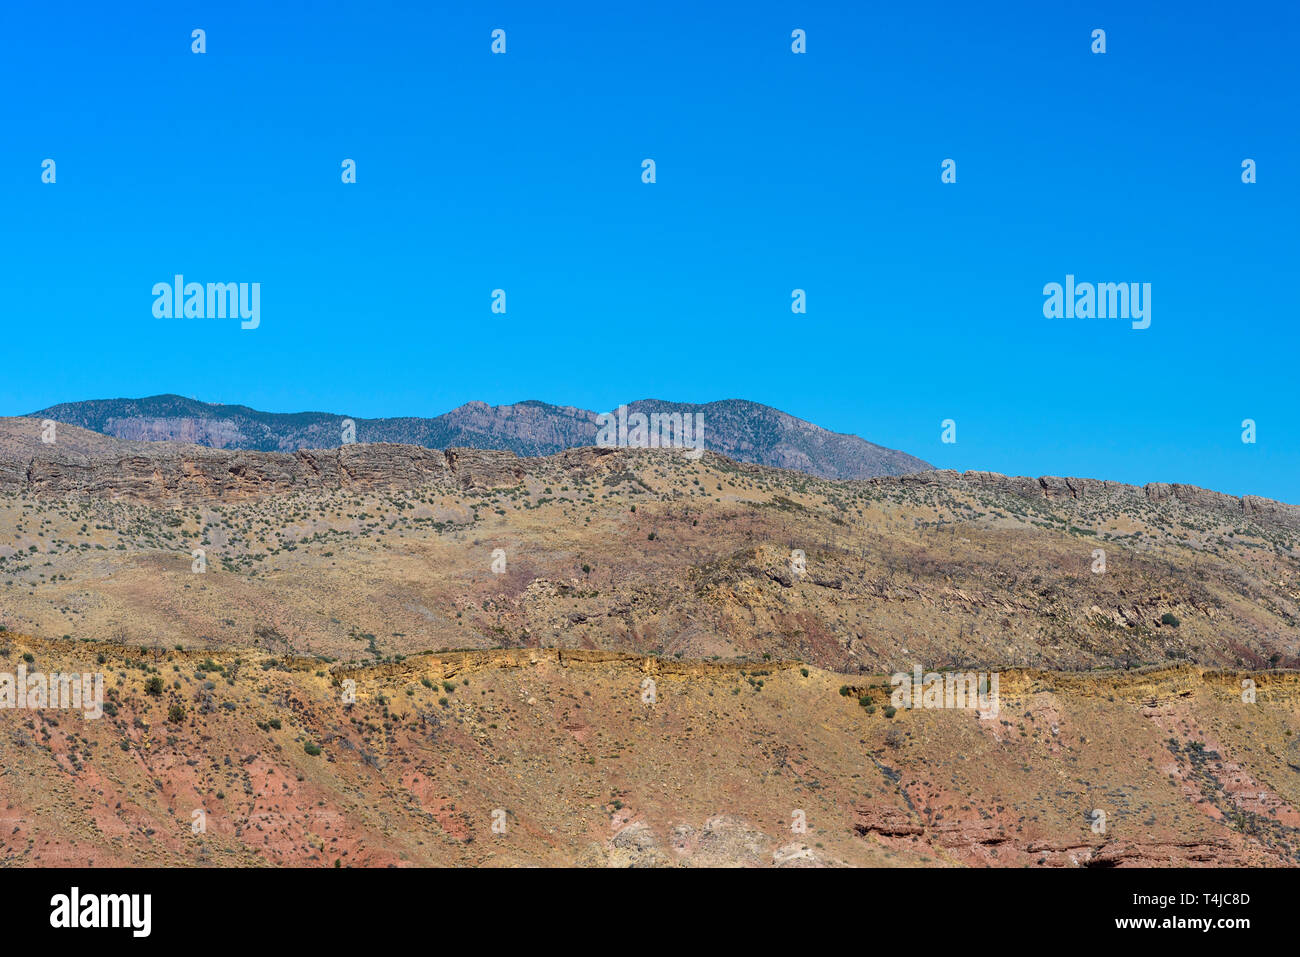 Gelb rote Wüste Berge mit spärlicher Vegetation unter einem strahlend blauen Himmel. Stockfoto